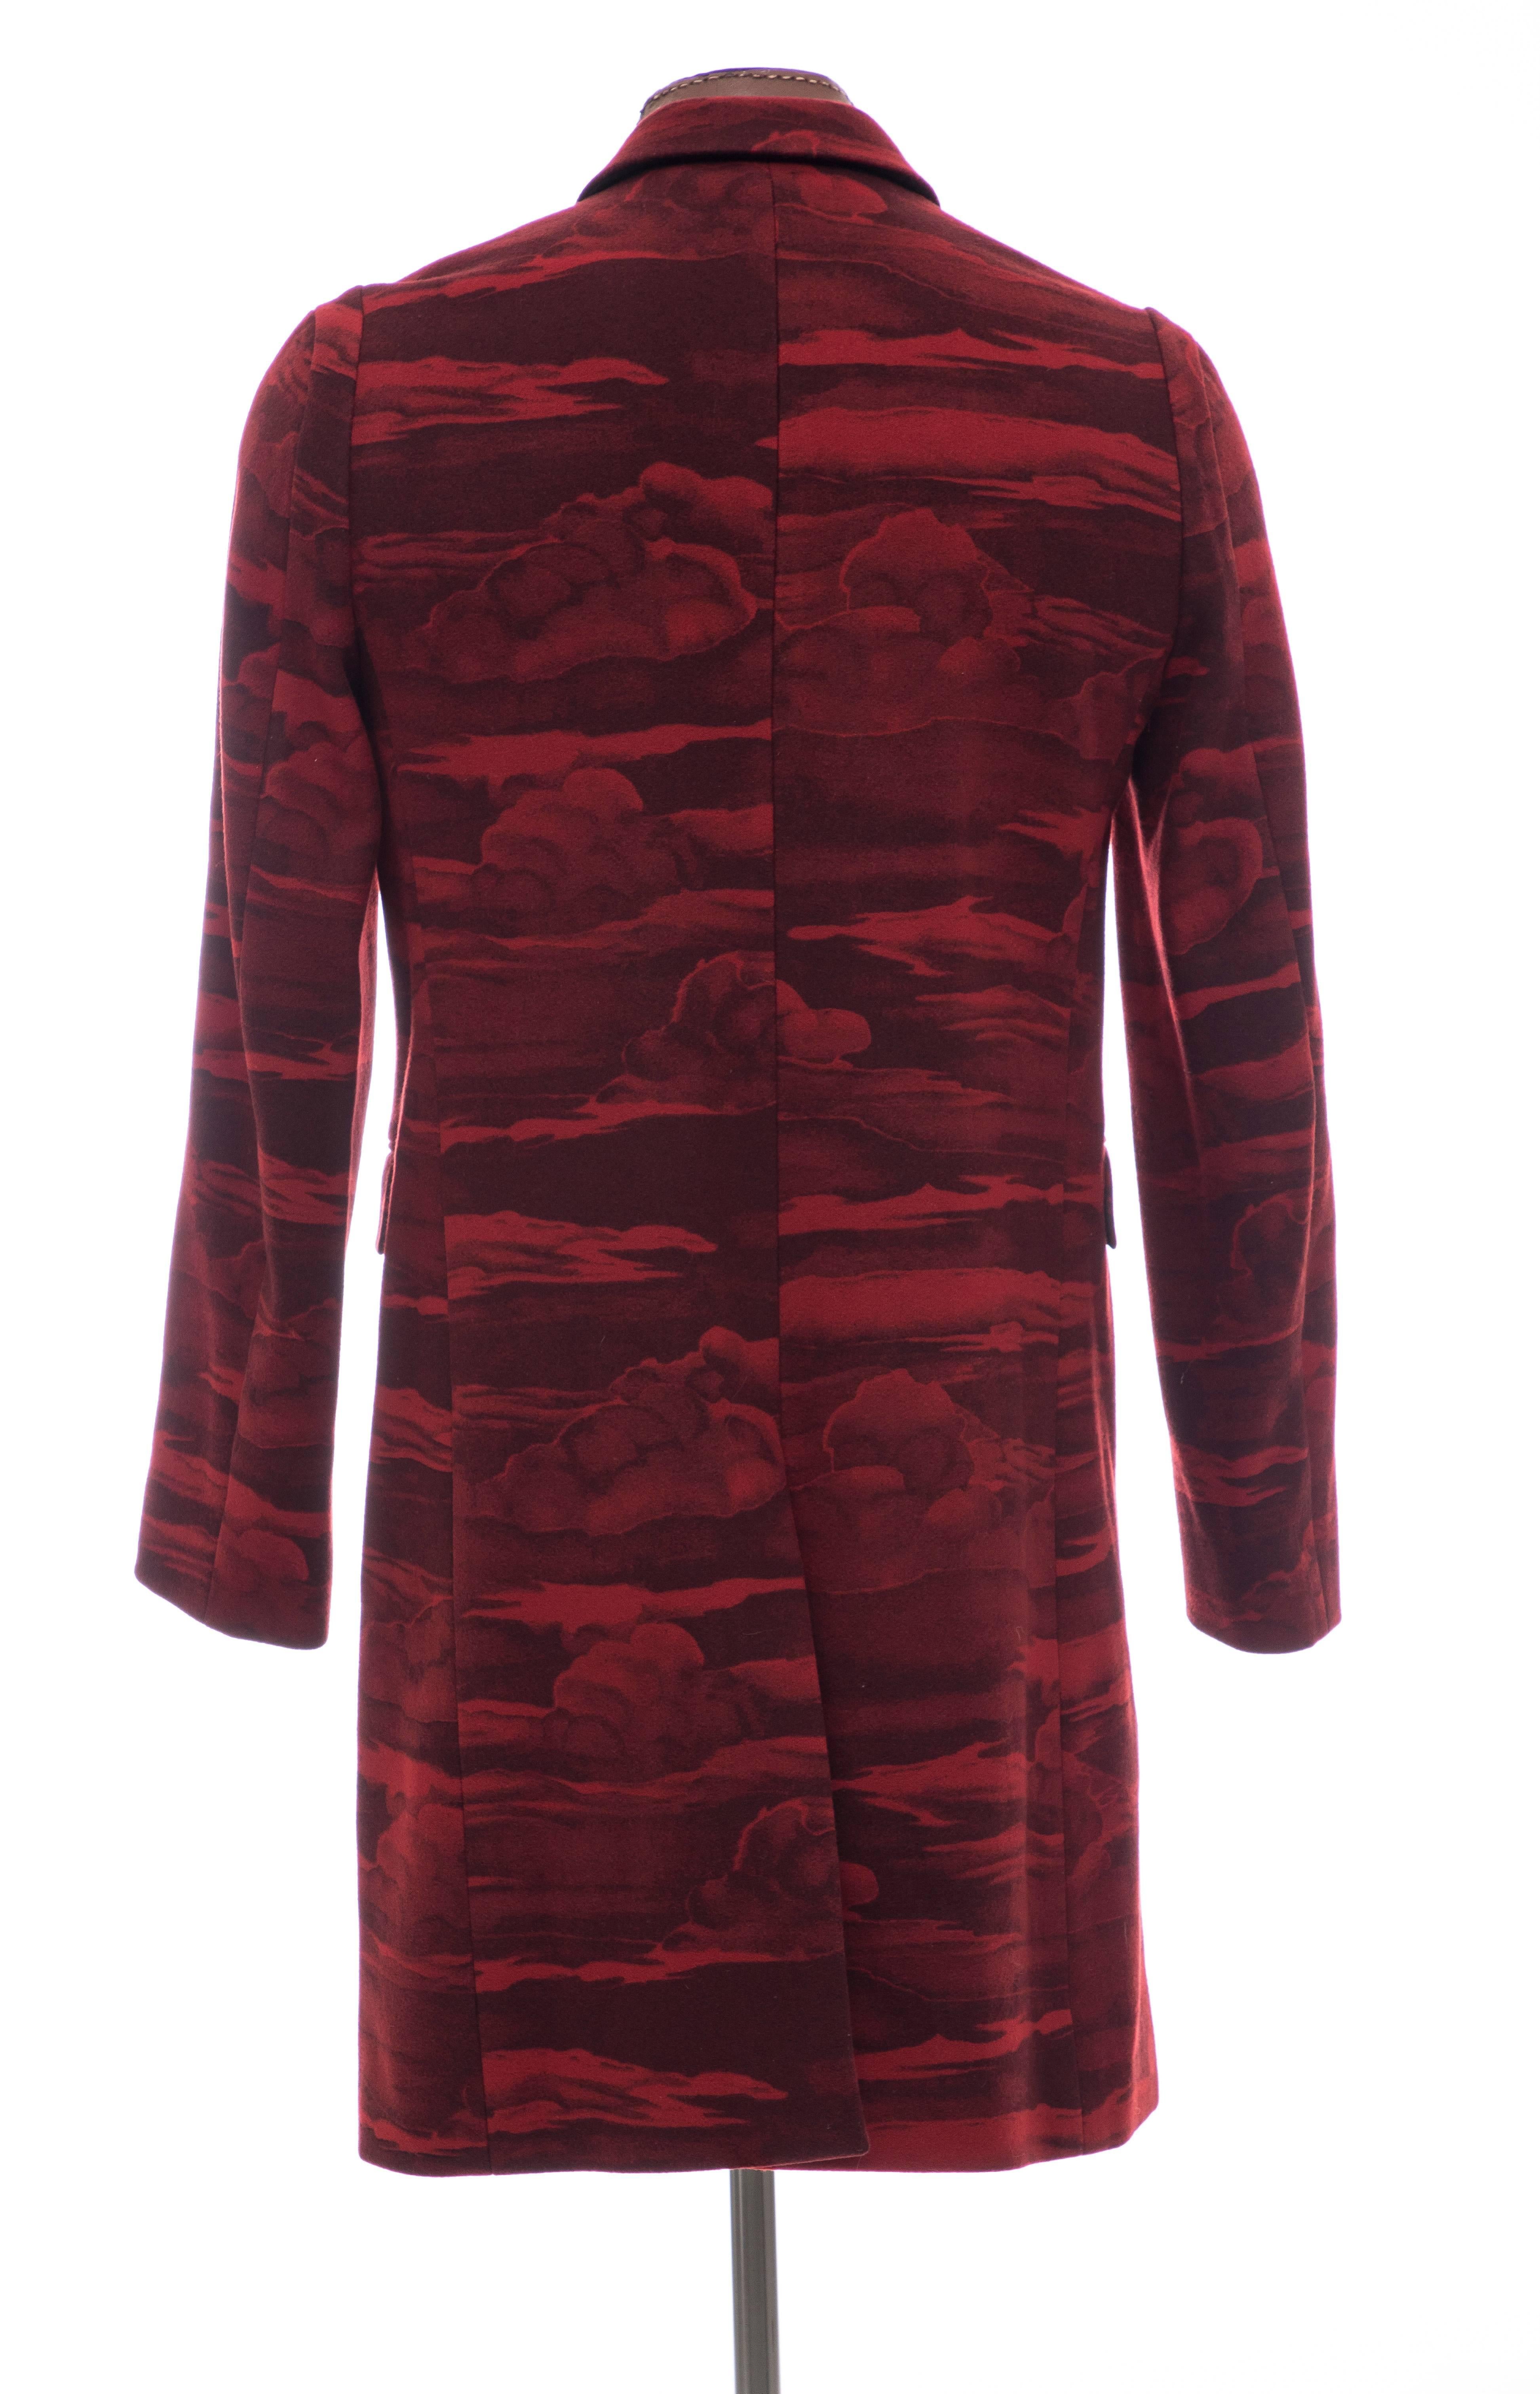 Kenzo Men's Runway Wool Red Cloud Print Coat, Fall 2013 2